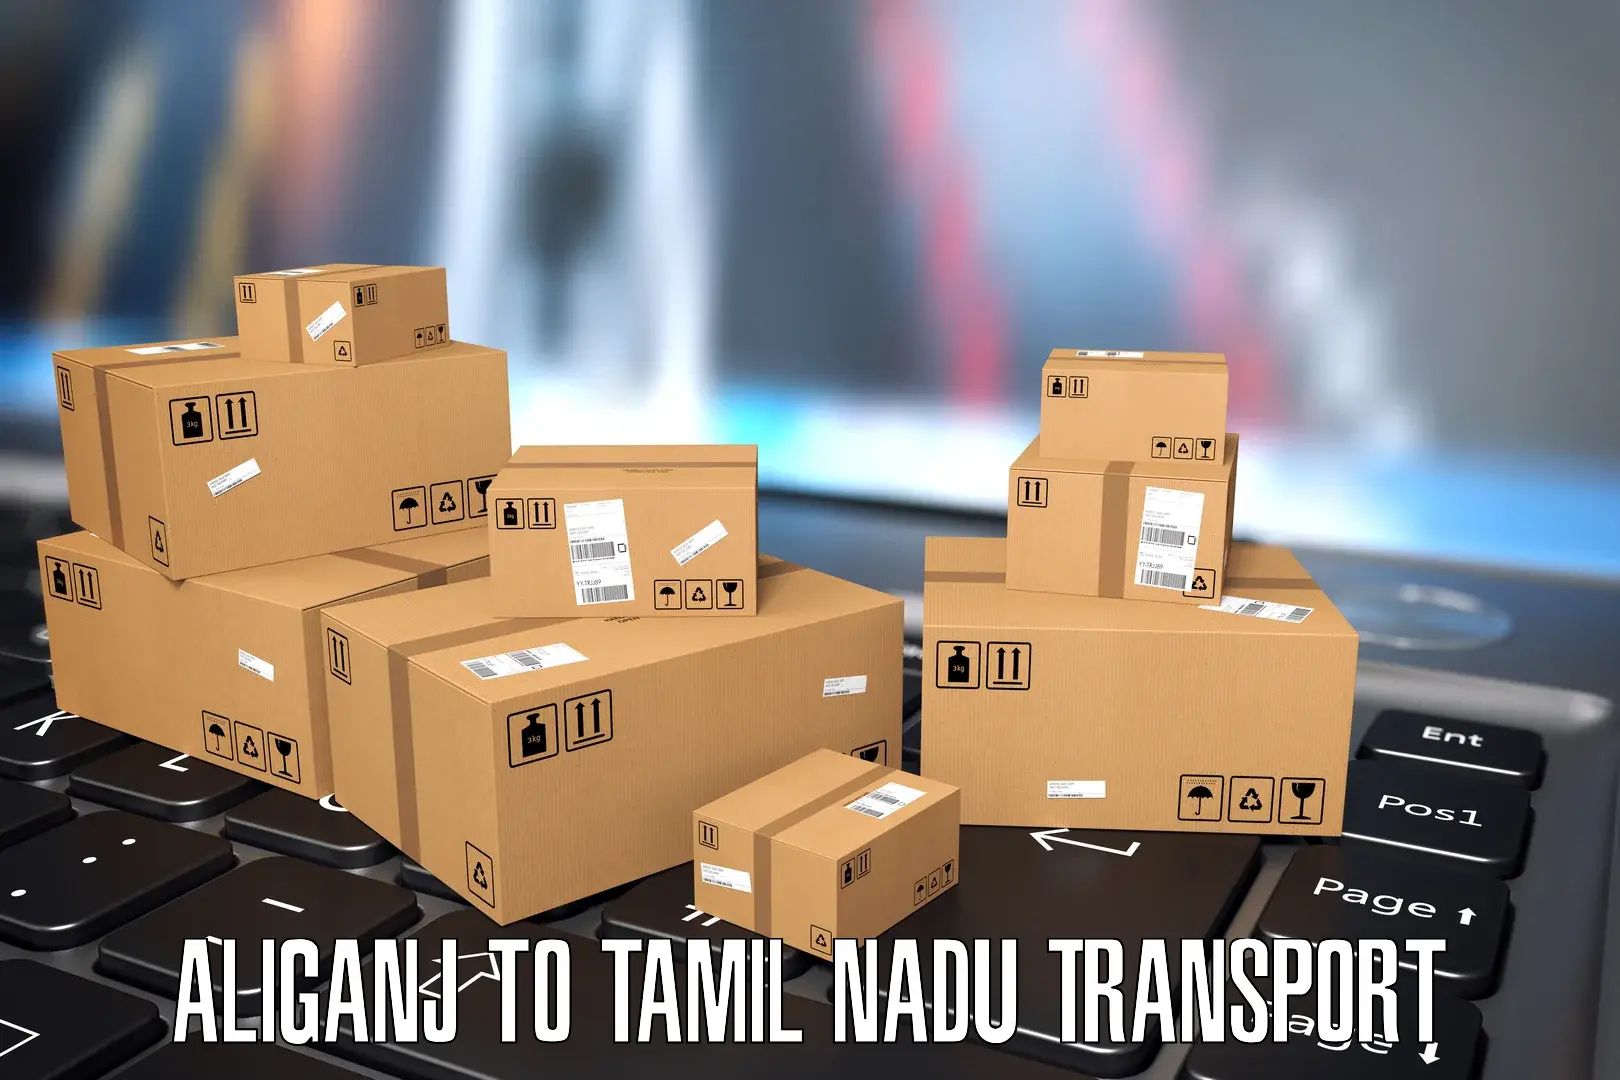 Nearest transport service Aliganj to IIIT Tiruchirappalli